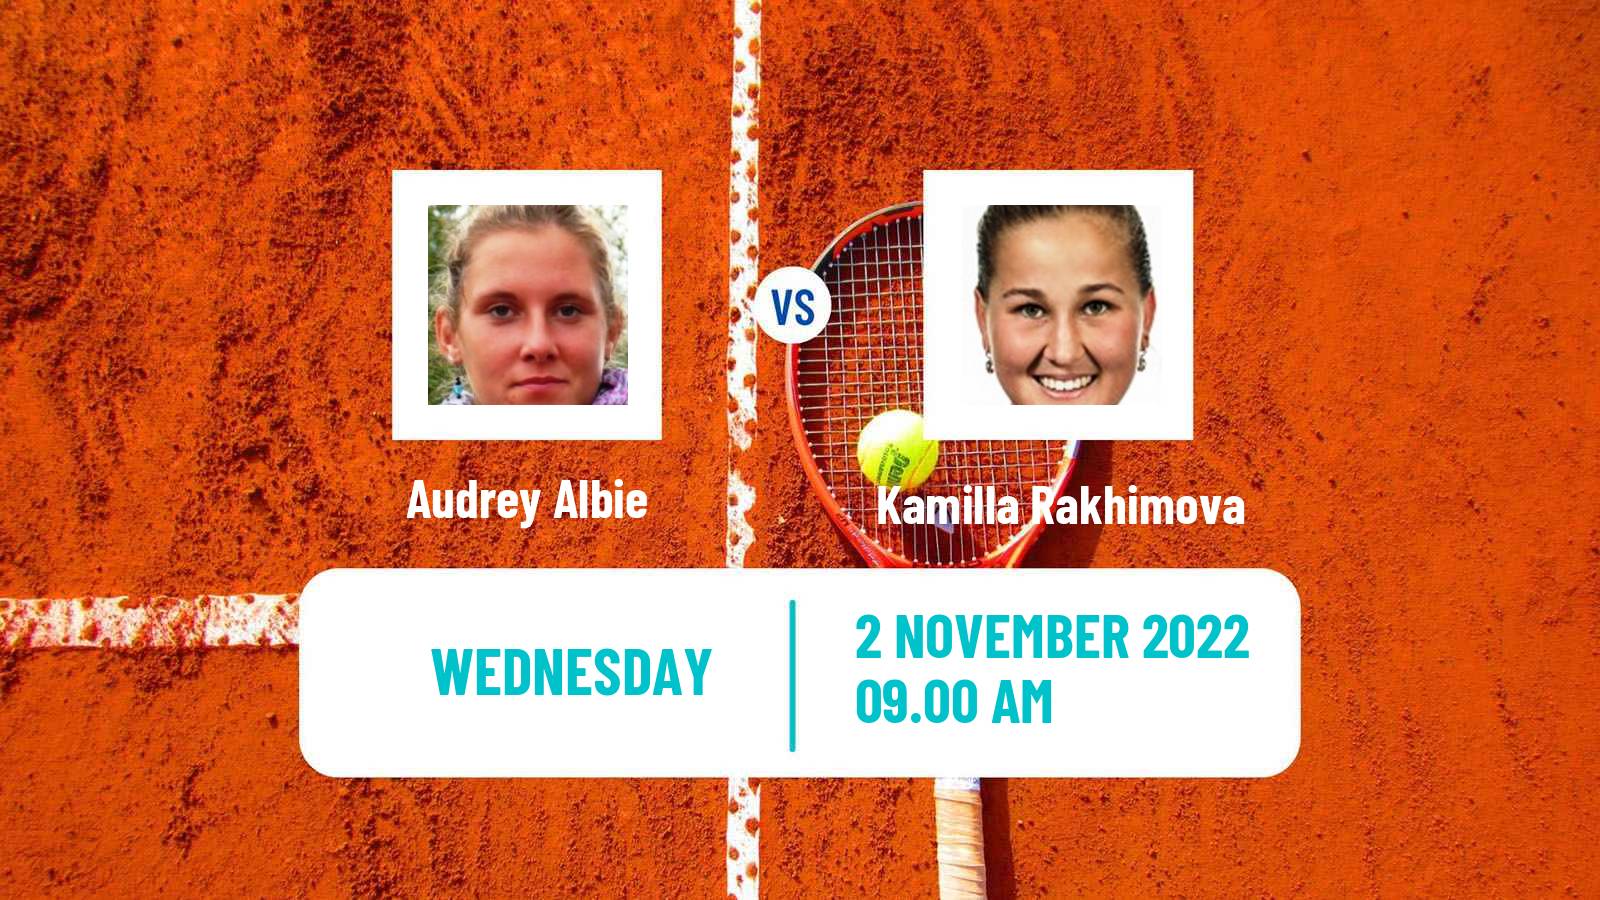 Tennis ITF Tournaments Audrey Albie - Kamilla Rakhimova